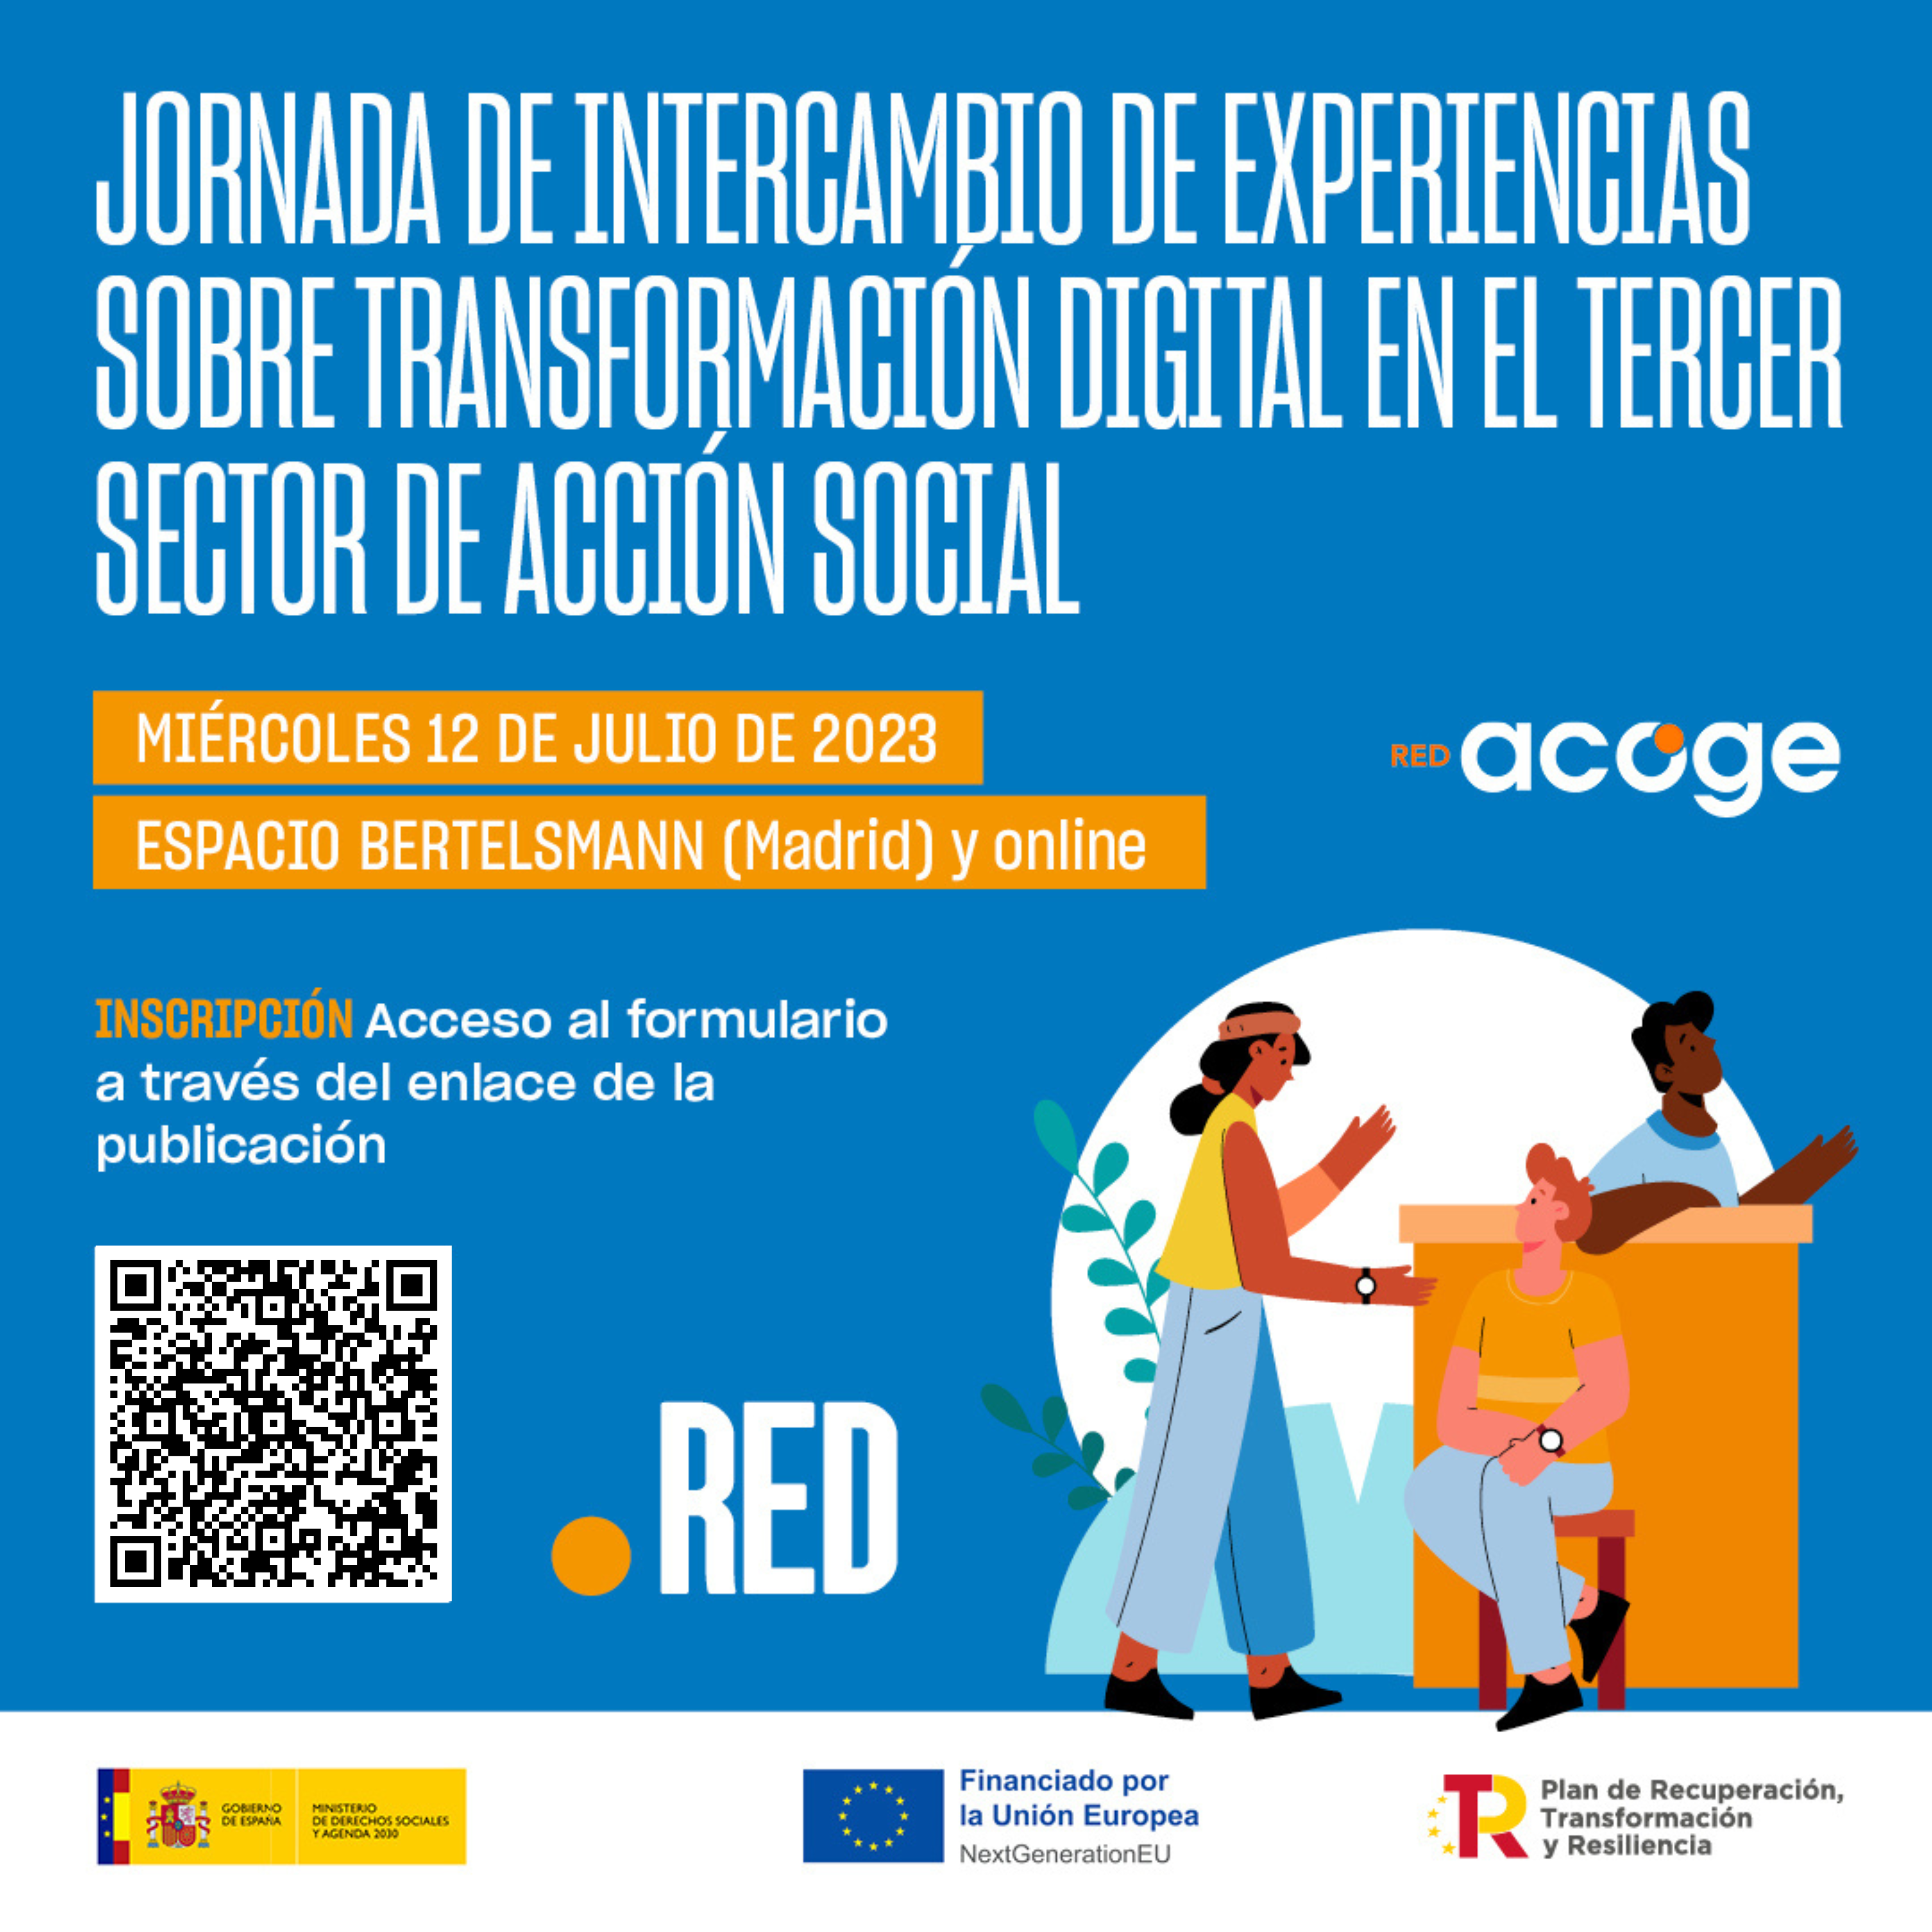 Diseño de jornada de intercambio de experiencias sobre transformación digital en el tercer sector de acción social organizada por la Red Acoge. Miércoles 12 de julio. Espacio Bertelsmann (Madrid) y online. Inscripción previa.   